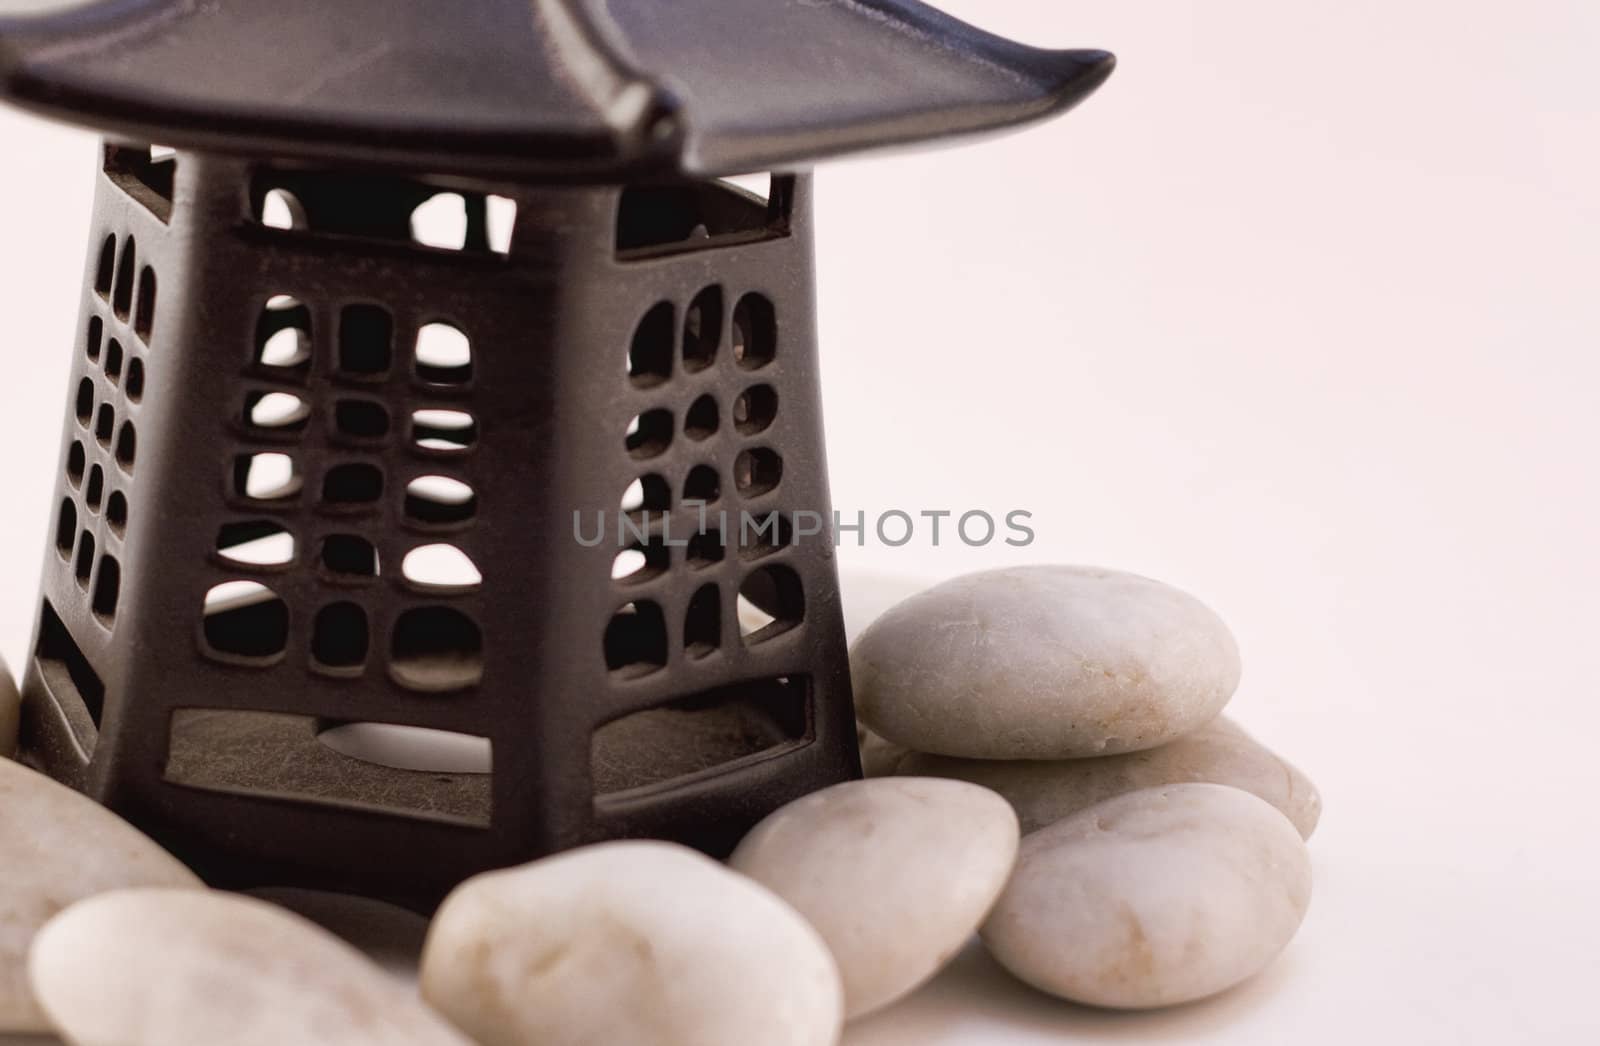 Asian style lantern with white rocks